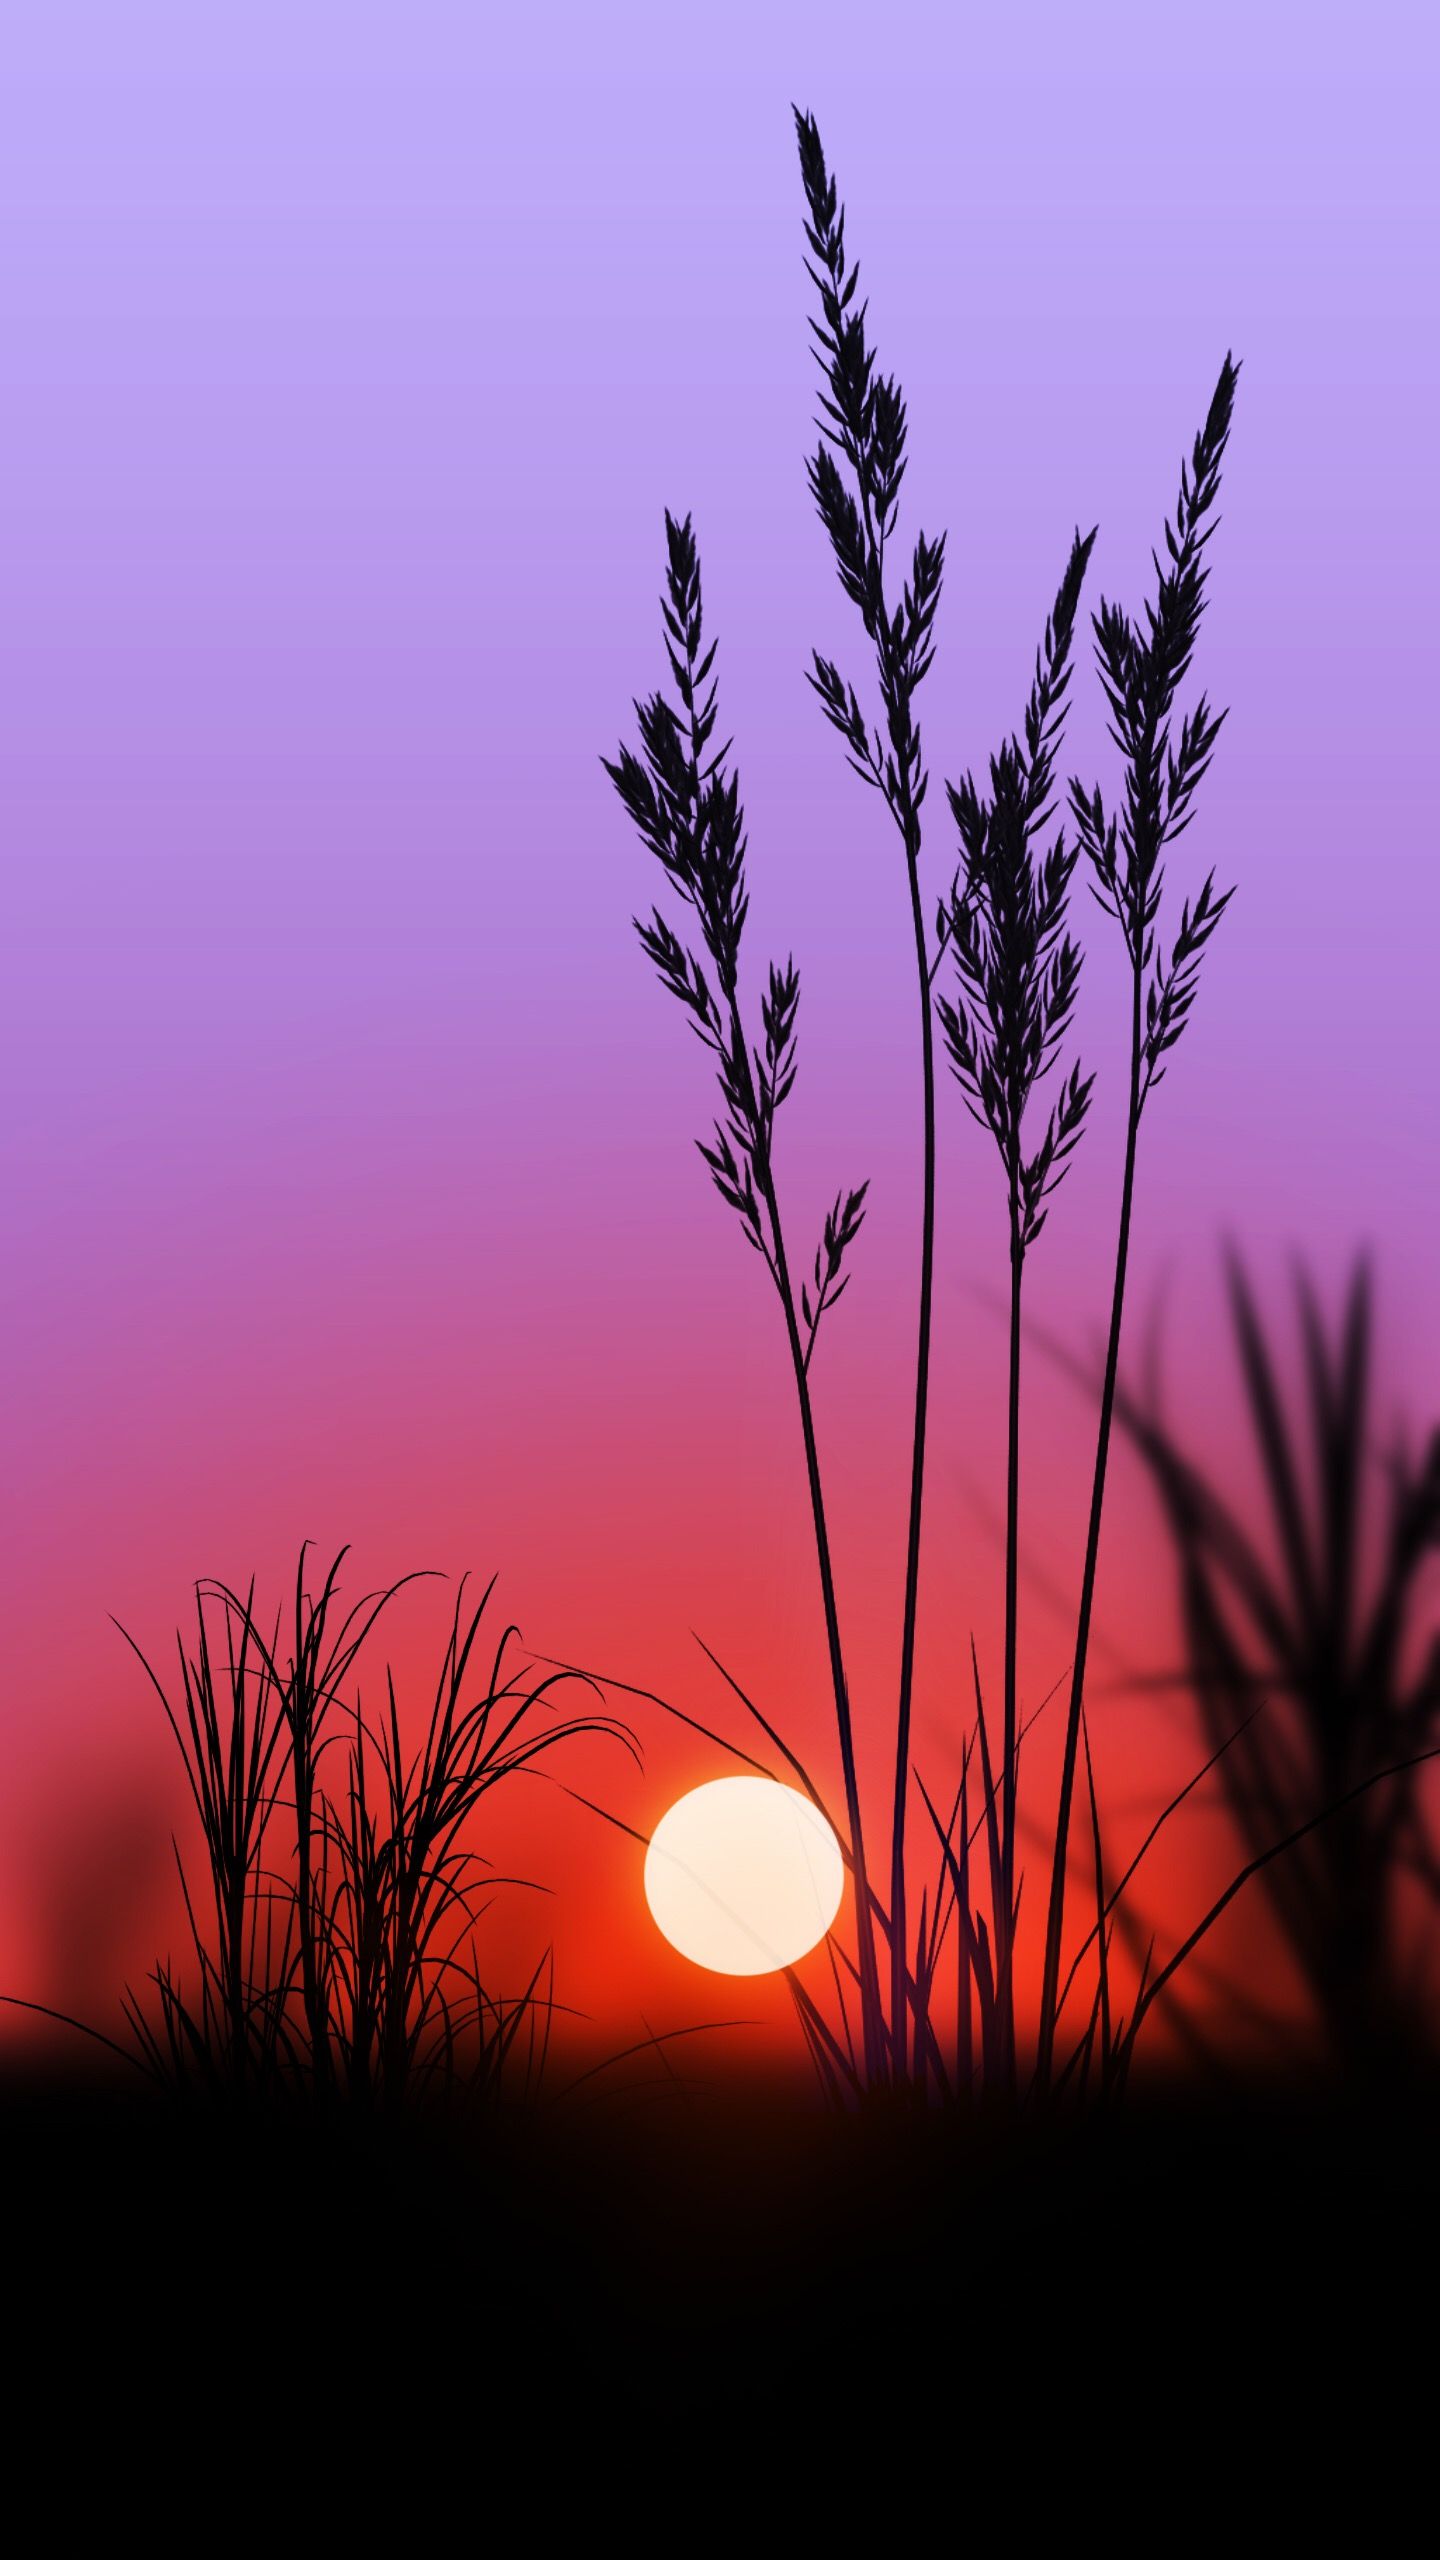 Hình ảnh hoàng hôn tím trong cánh đồng để lại trong bạn một cảm giác khó tả. Sắc đỏ tím đẹp buồn, lãng mạn của bầu trời khiến bạn phải mãi ngắm nhìn và suy ngẫm về cuộc đời. Hãy tận hưởng khoảnh khắc đó và cảm nhận sự đẹp của thiên nhiên.